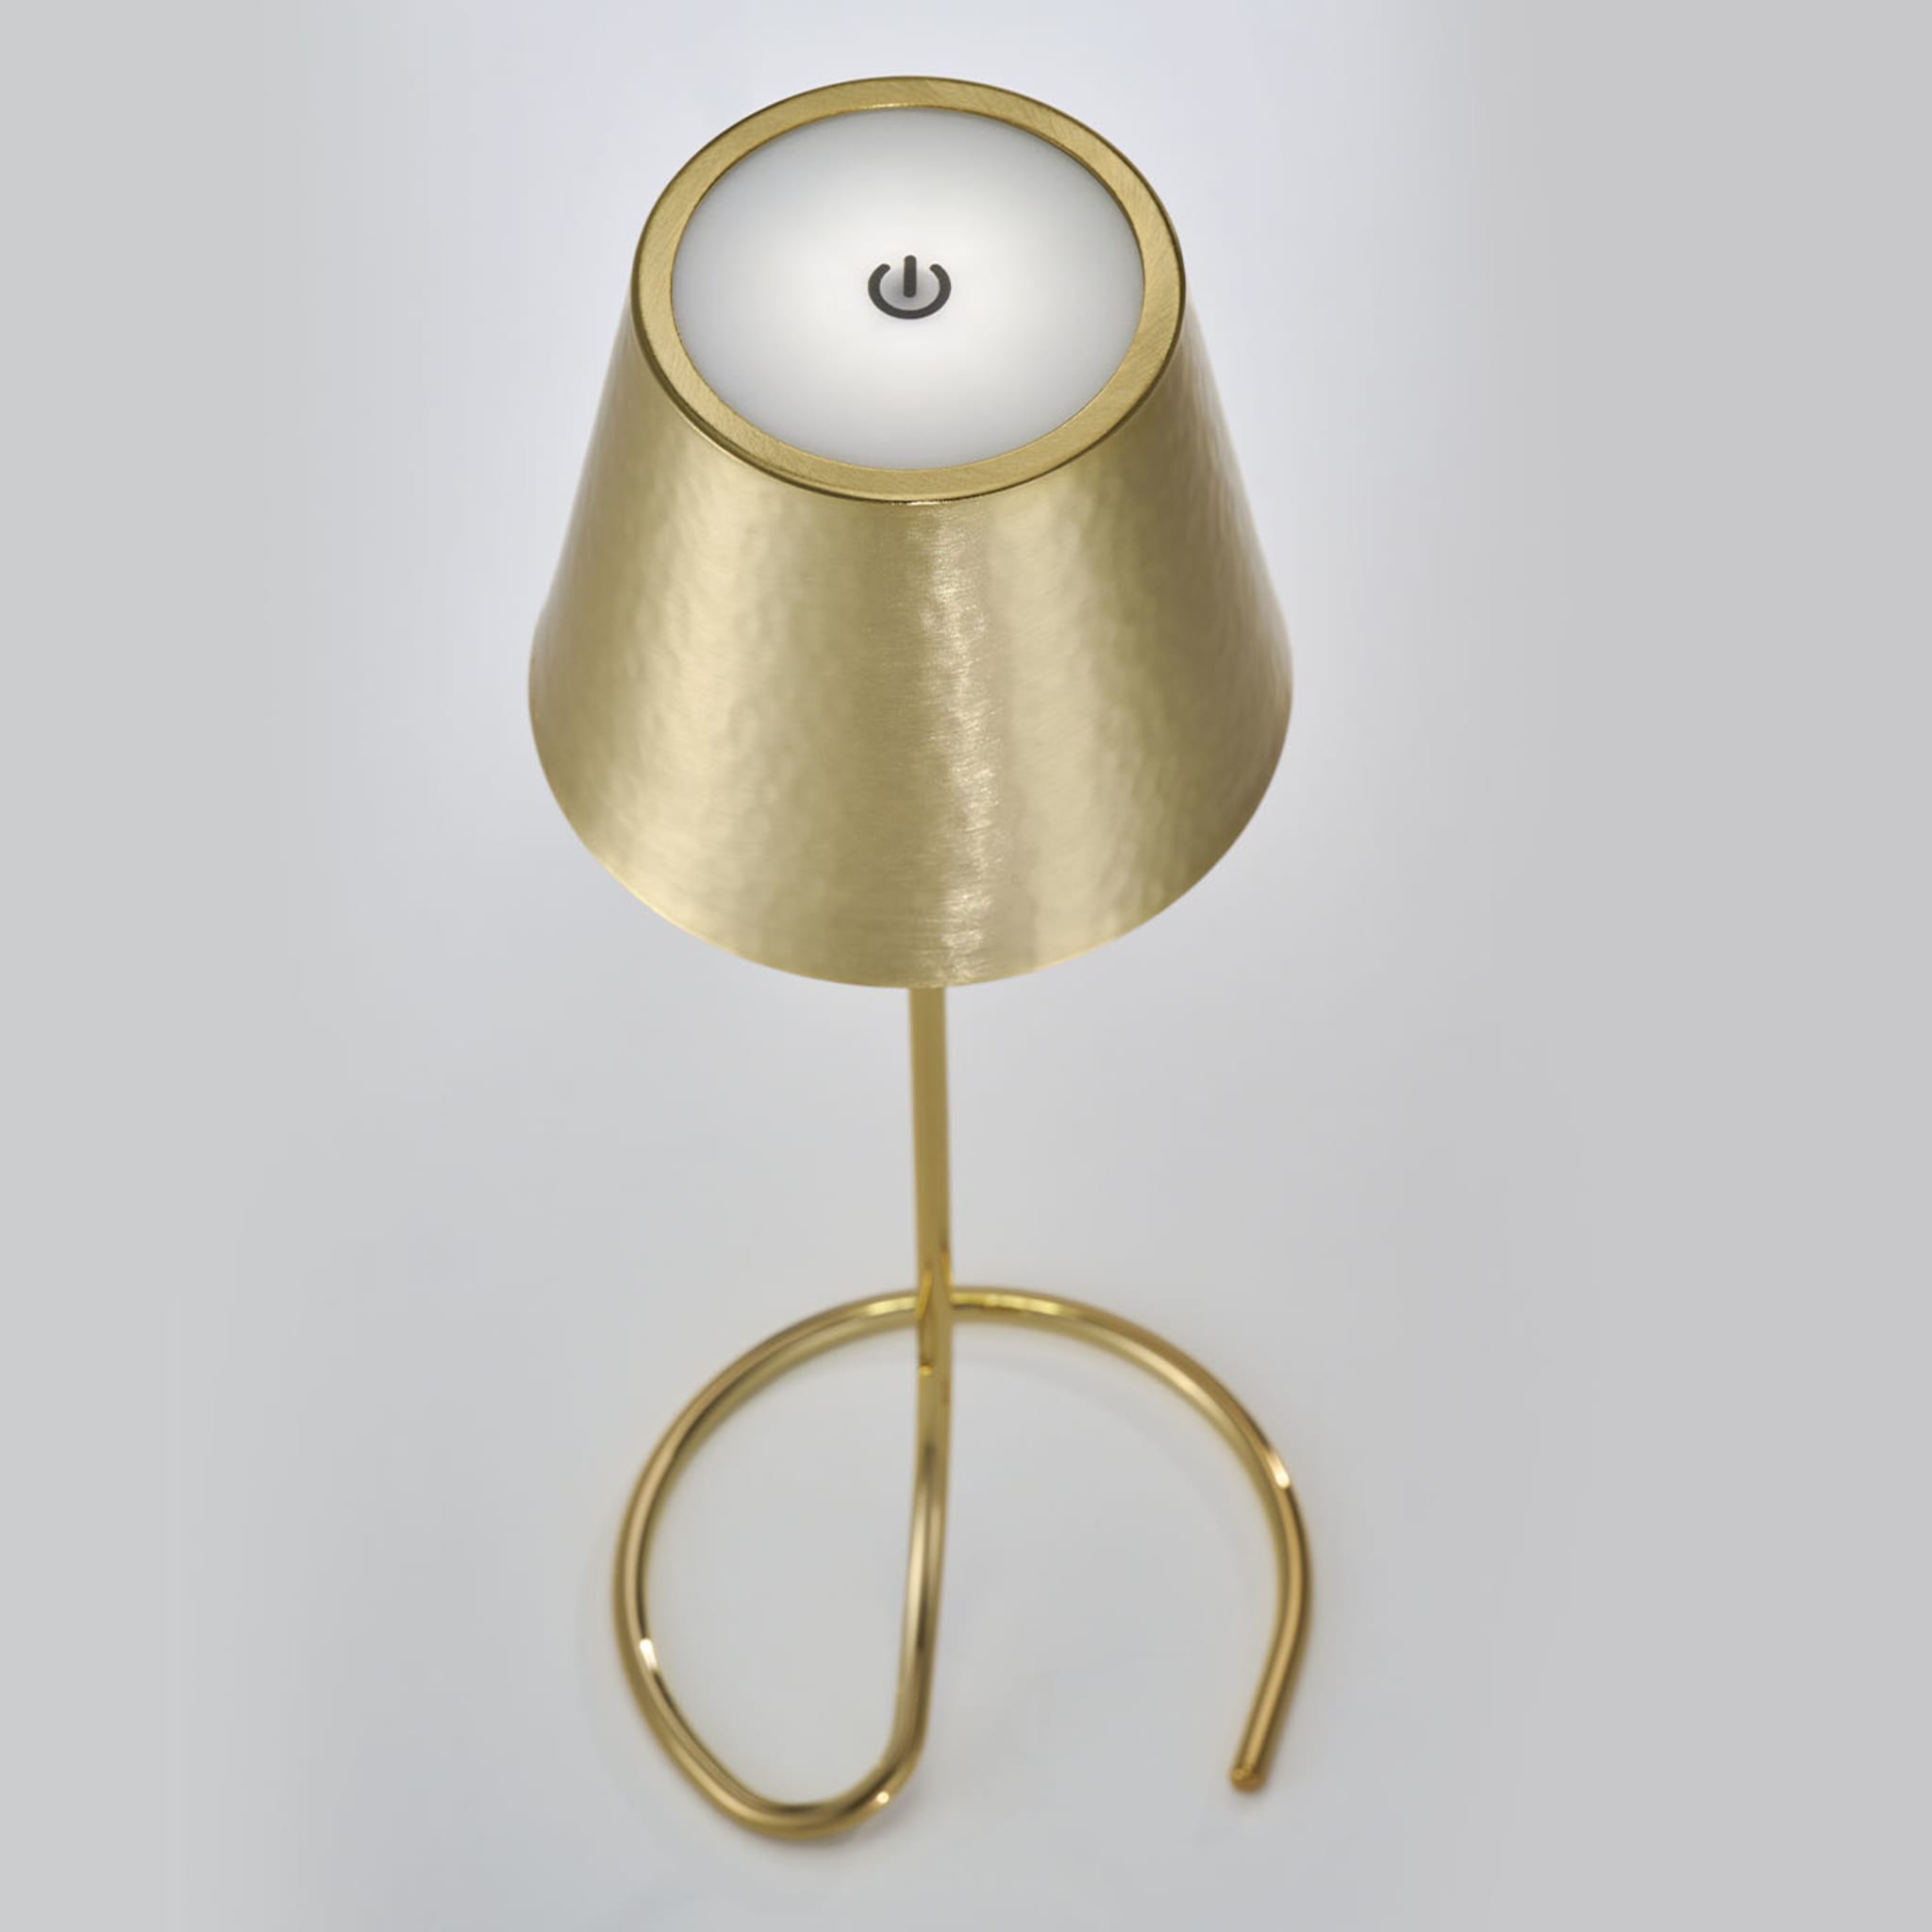 Golden Lamp #2 by Itamar Harari - Alternative view 2